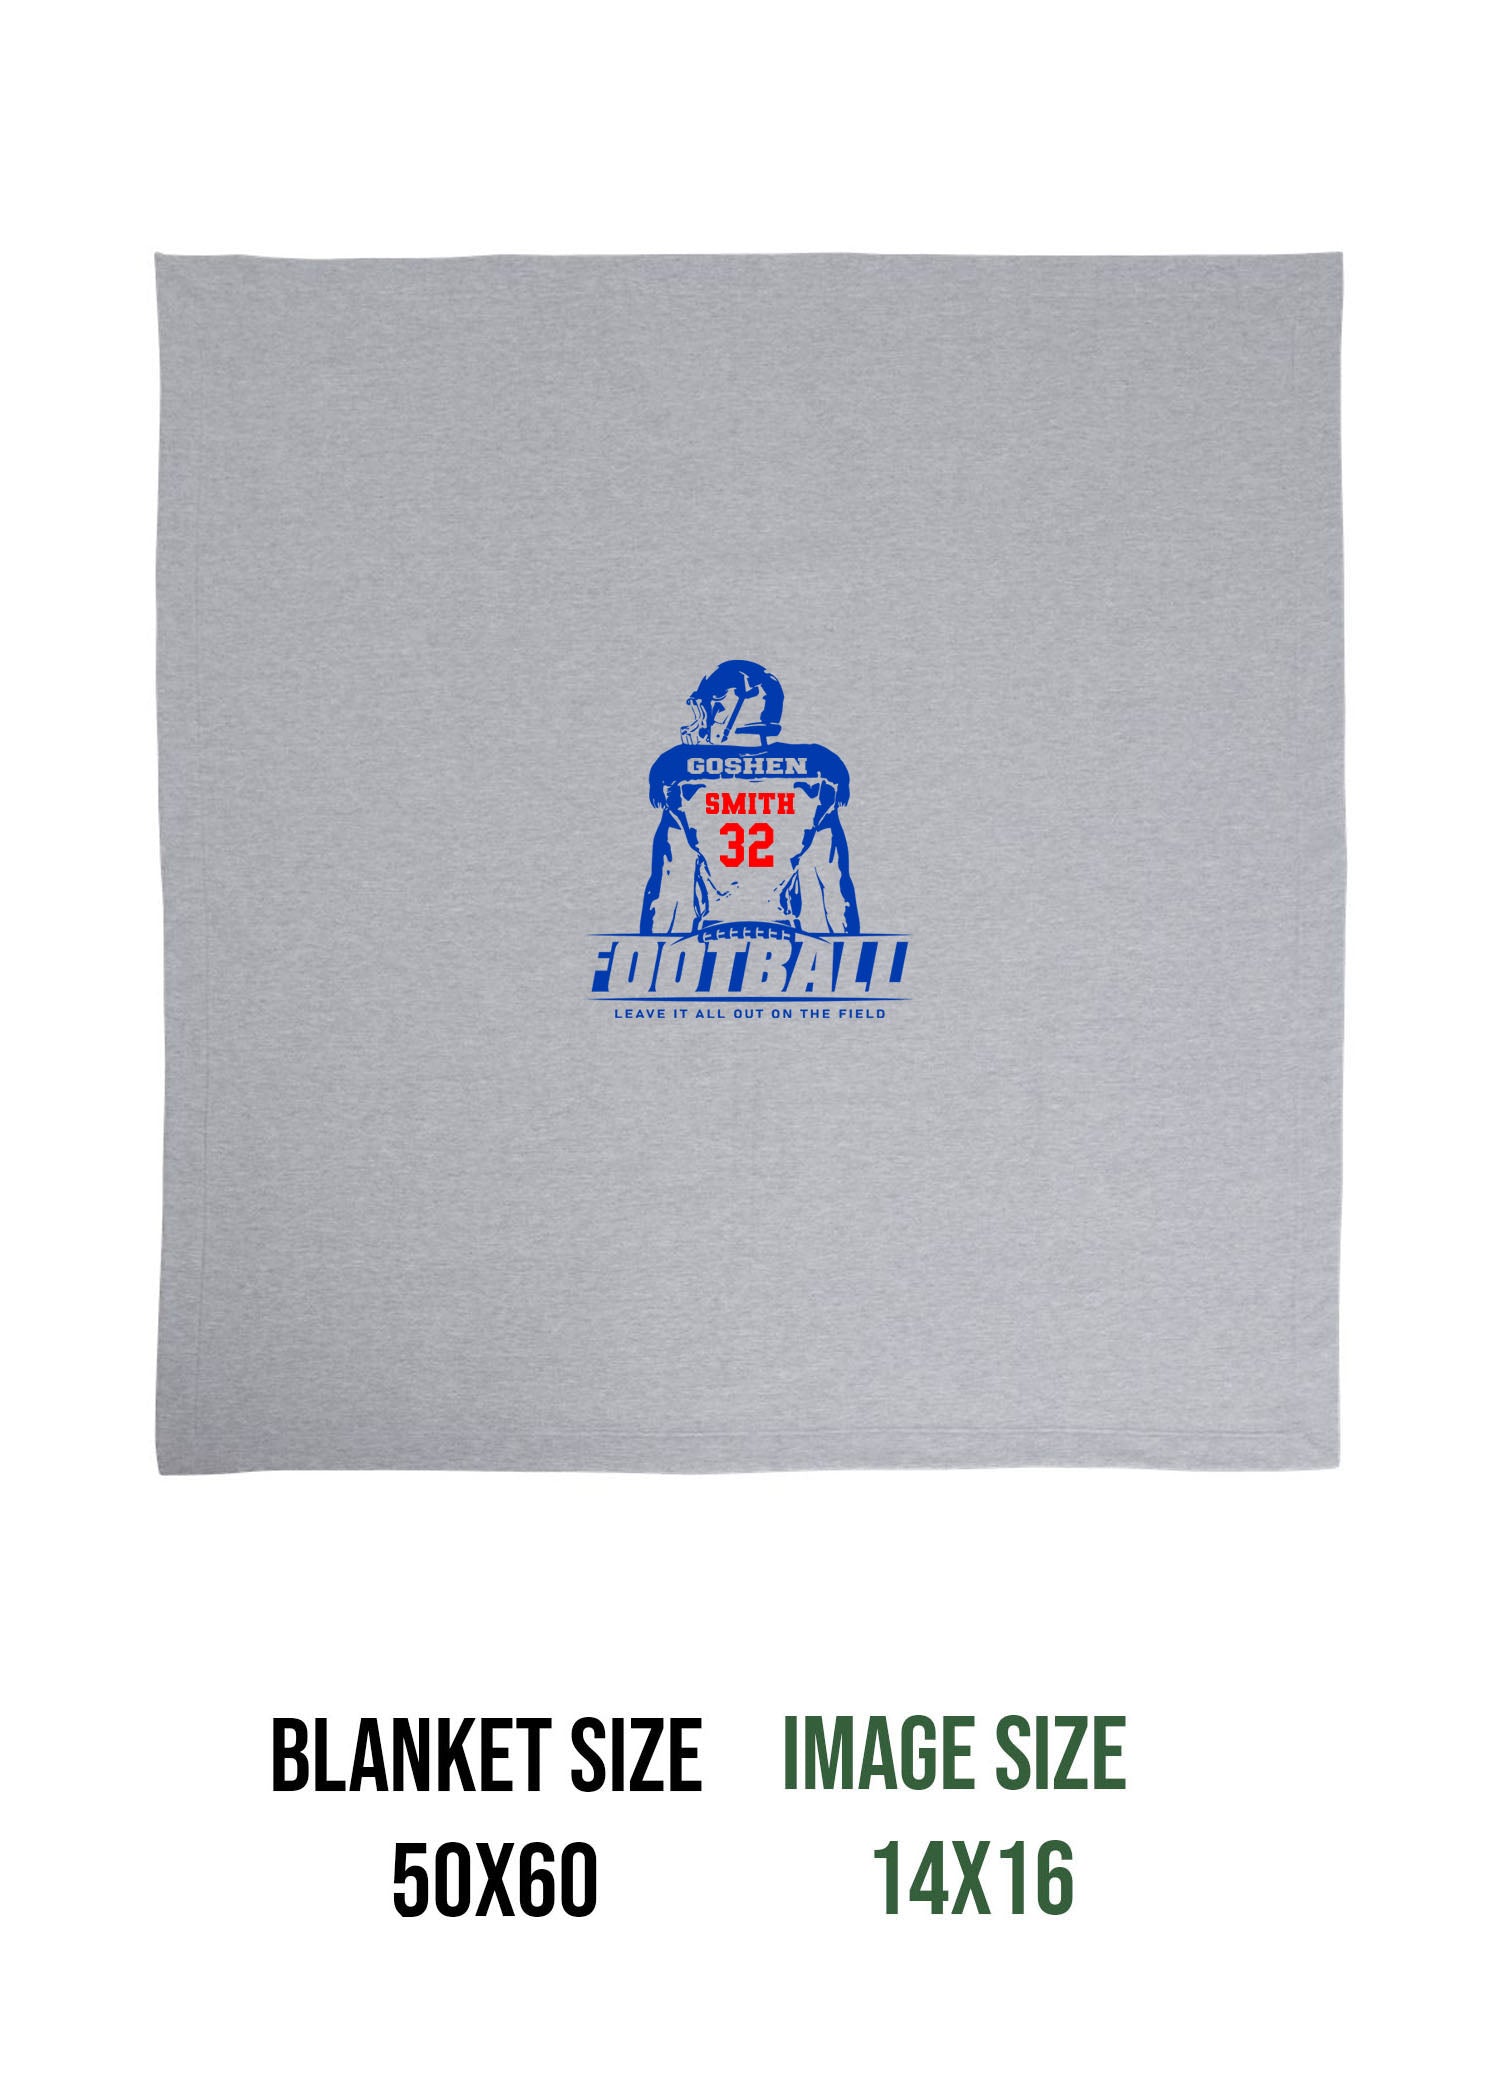 Goshen Football Design 5 Blanket